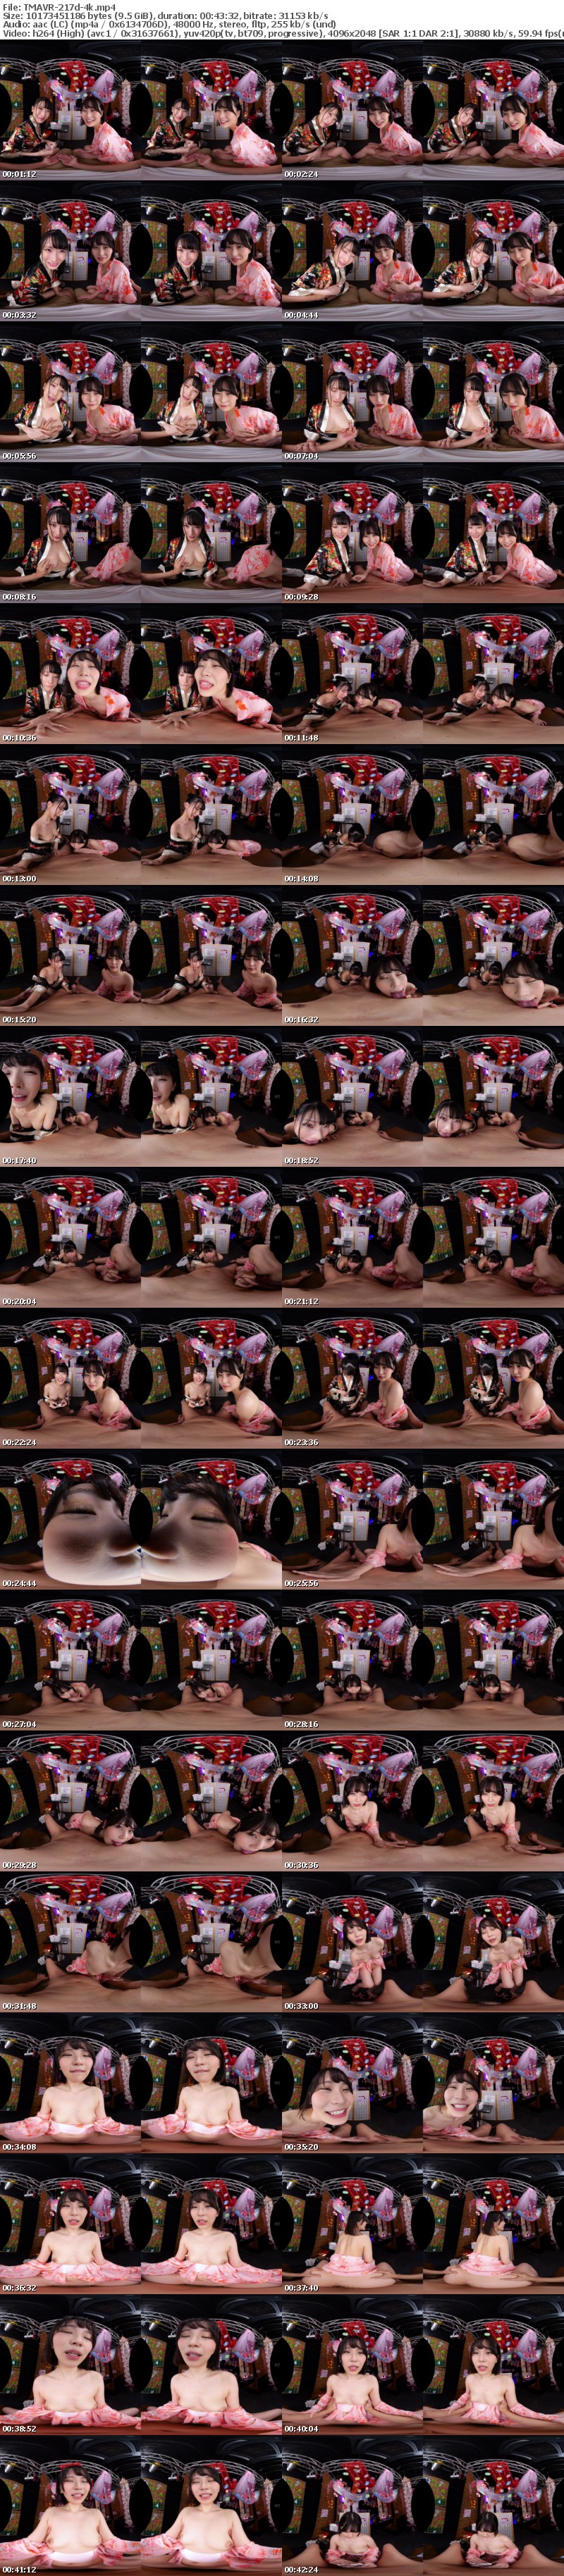 [VR] TMAVR-217 【VR】観光客に話題沸騰！インバウンド風俗花魁系ピンサロ『OMOTENASHI』裏オプ黙認で爆ヌキ花びら回転！抜きまくりヤリまくりの生本番！